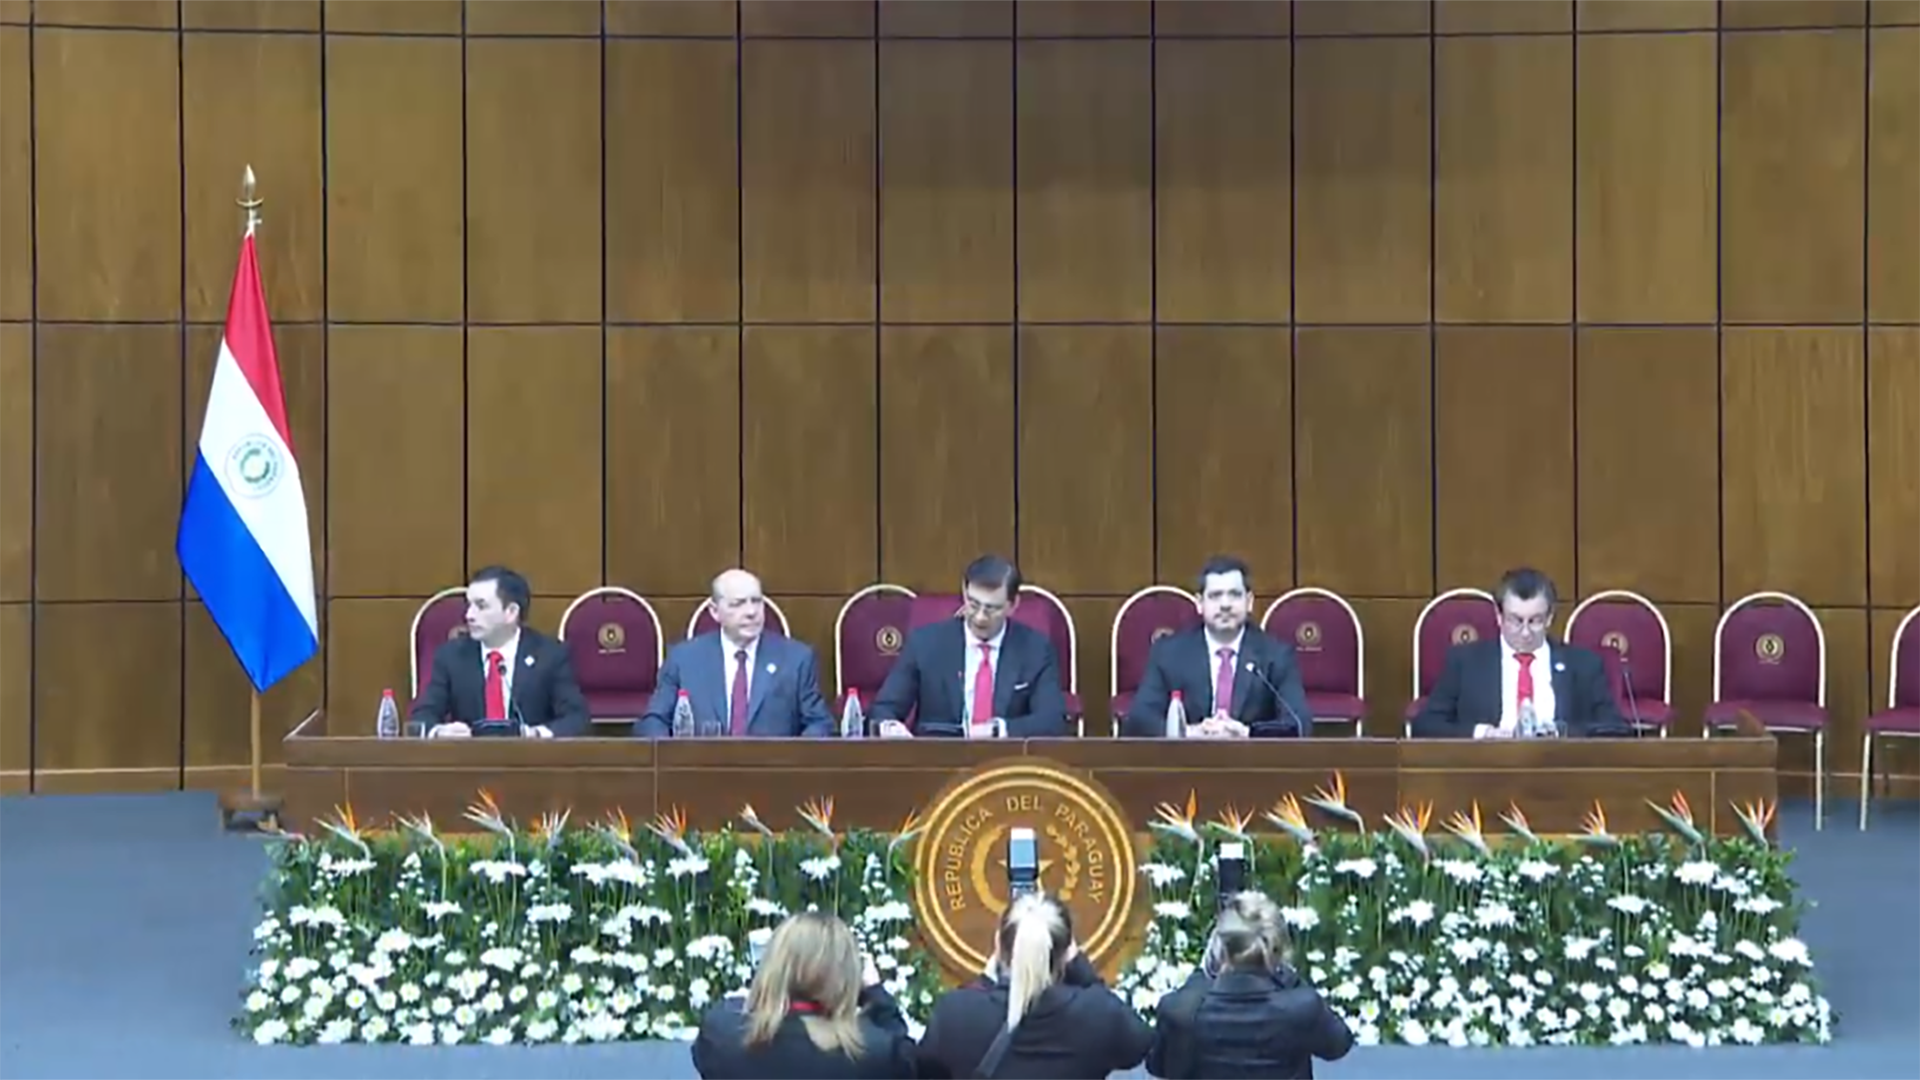 La sesión en el Congreso Nacional comenzó de forma puntual a las 7:00 local (TV Presidencia Paraguay)